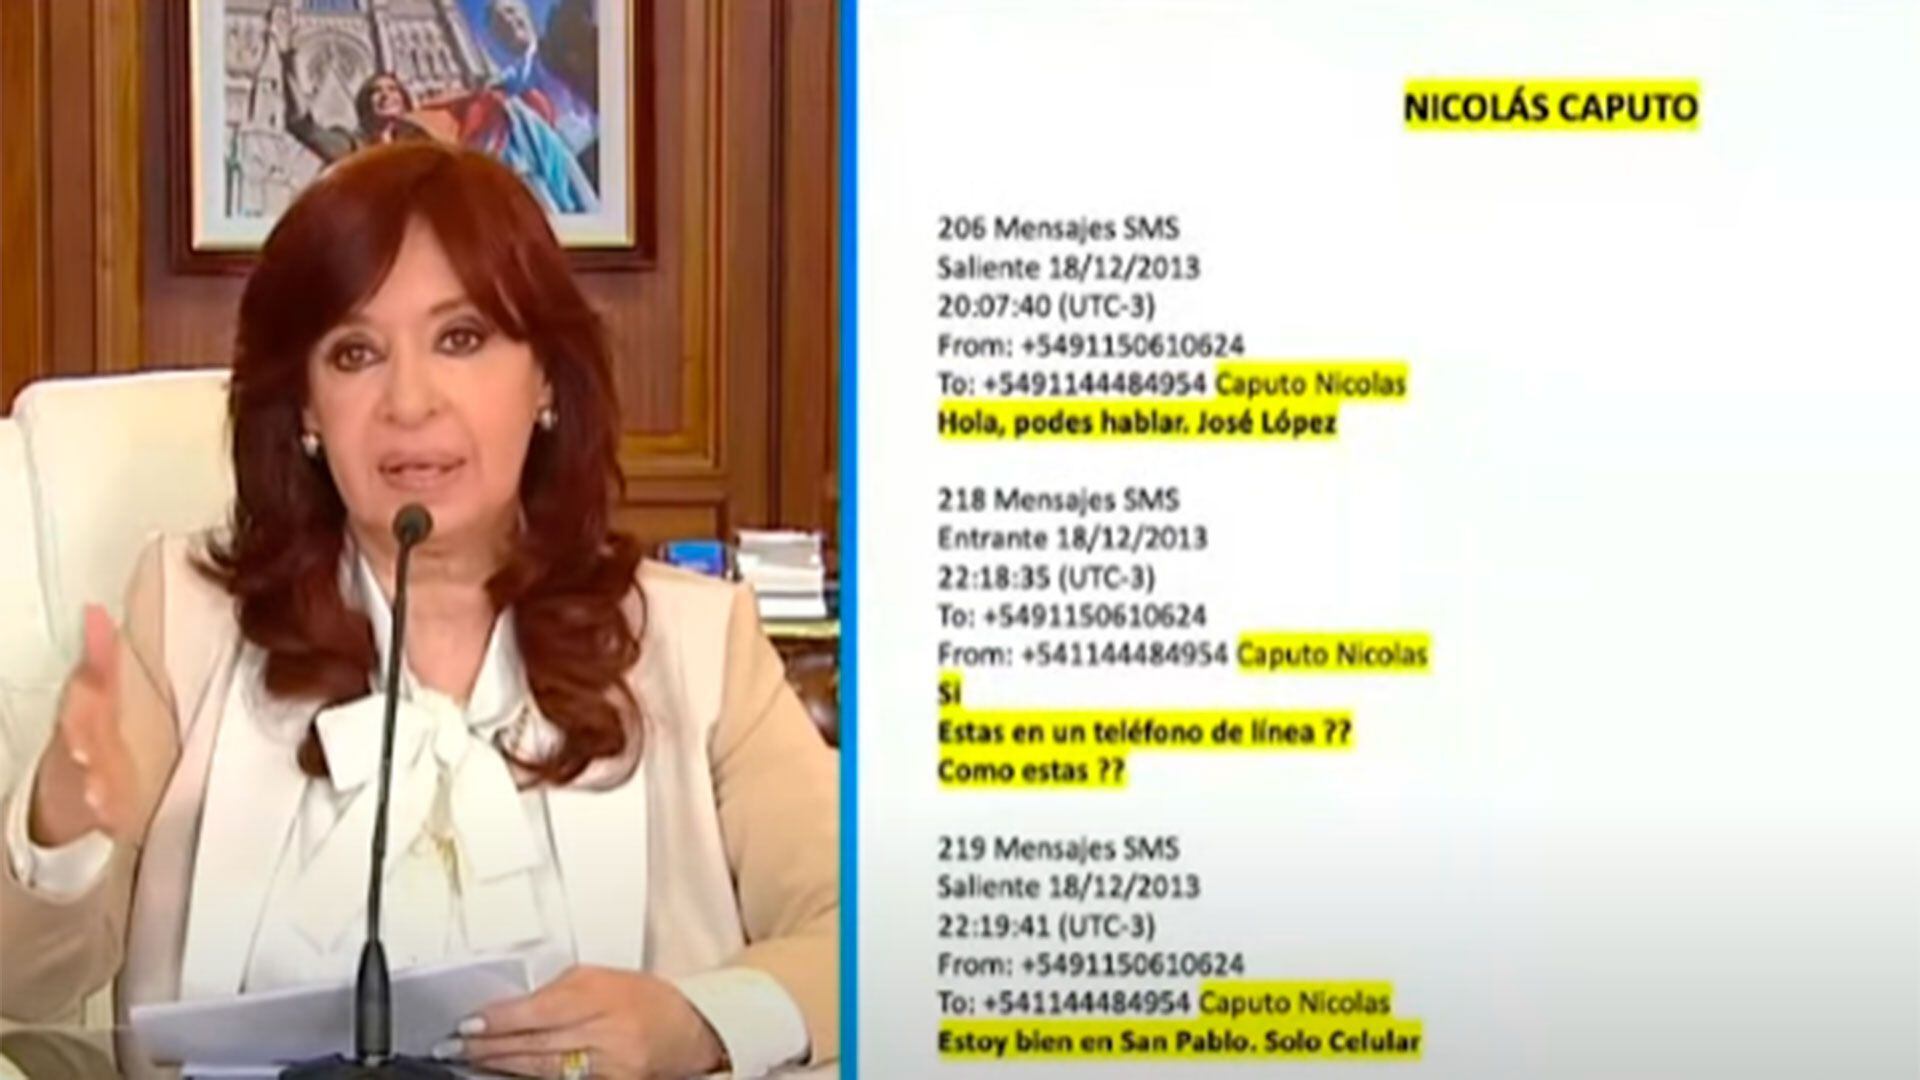 Los mensajes entre José López y Nicolás Caputo que mostró Cristina Kirchner en su derecho a defensa